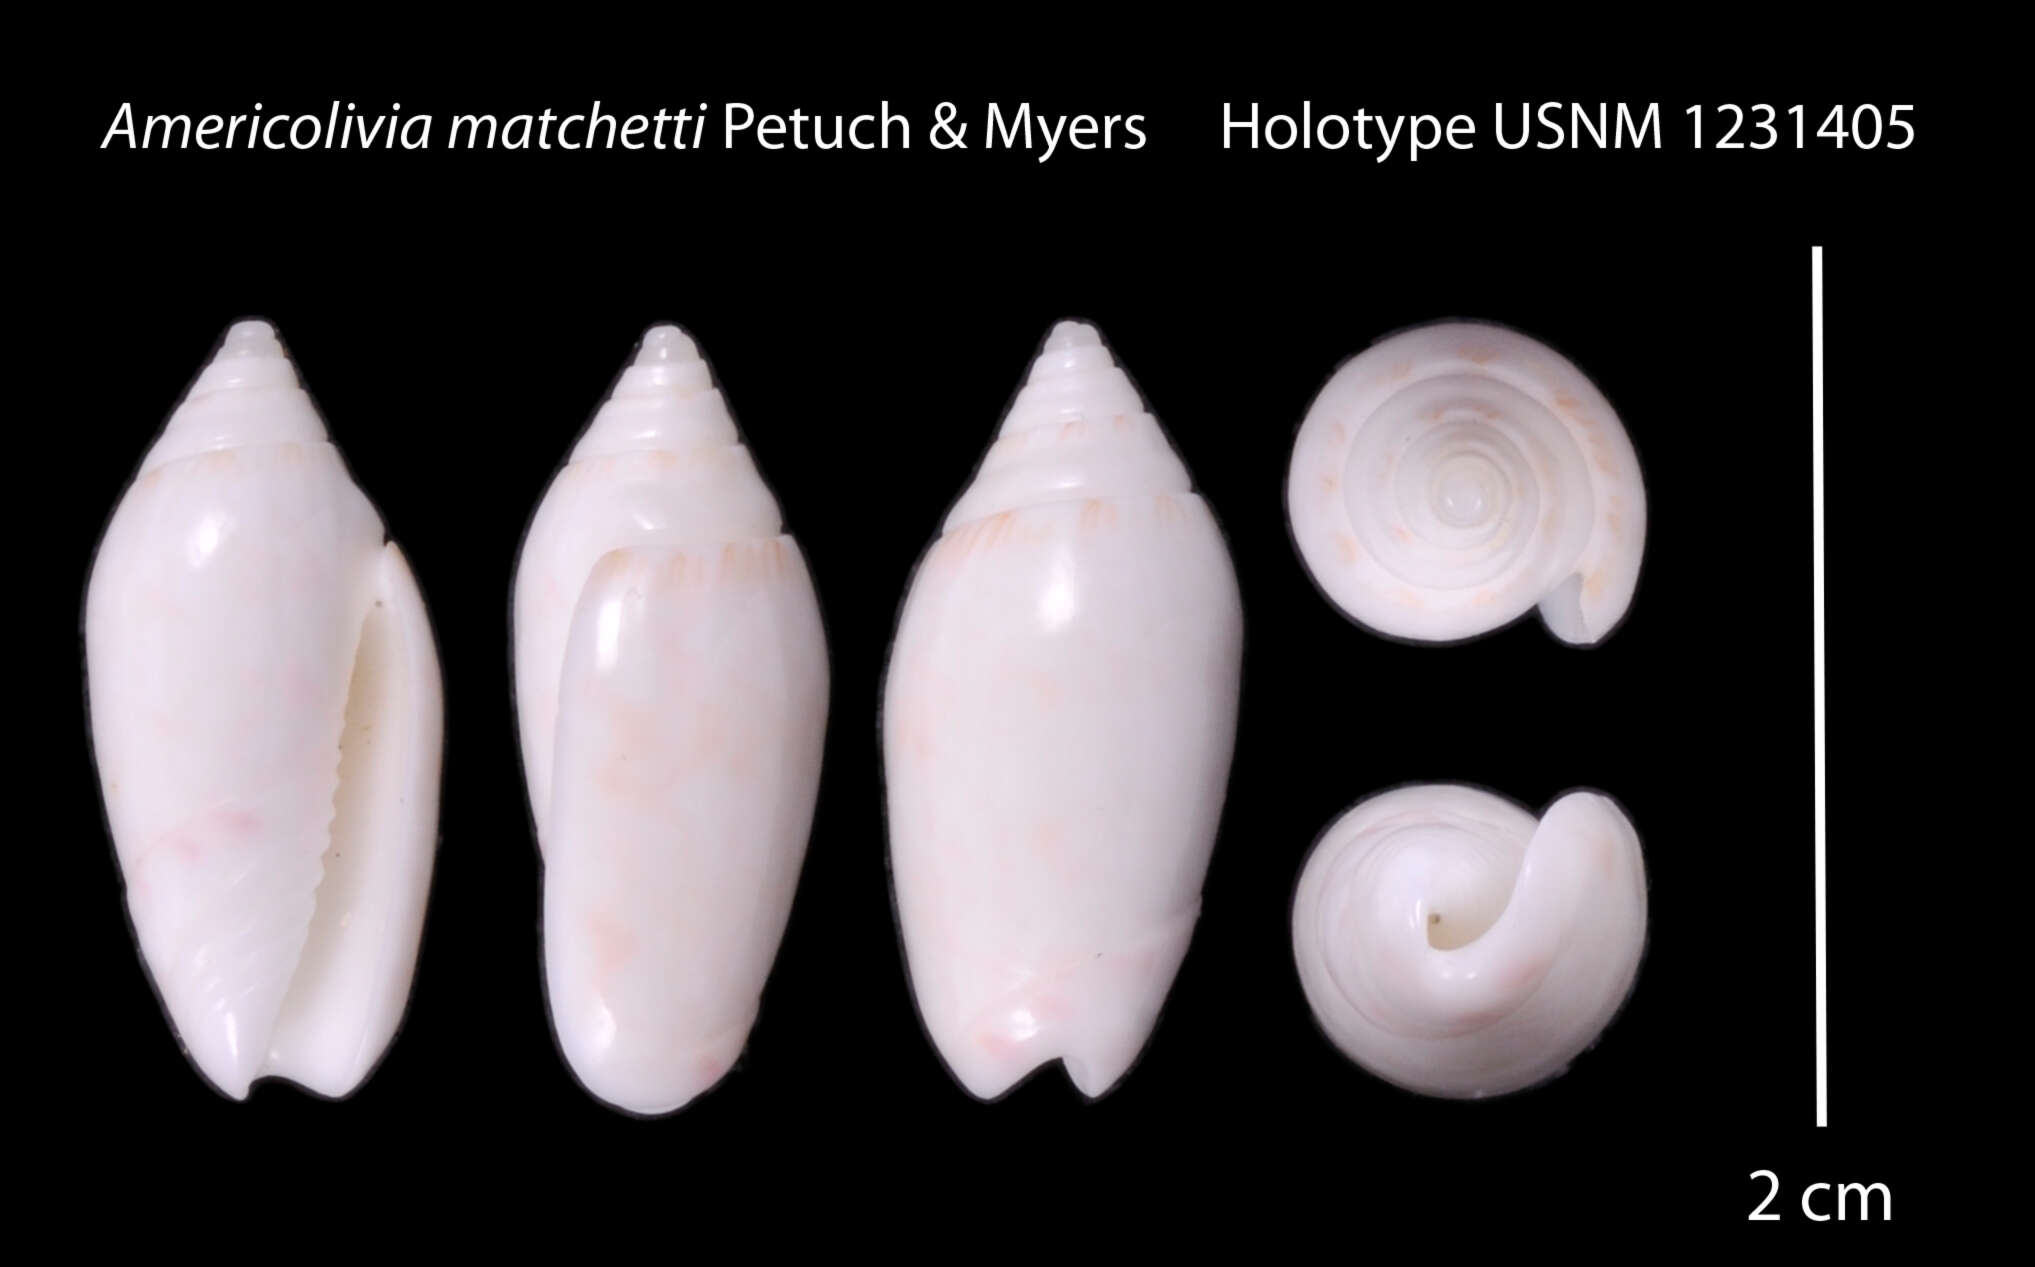 Image of Americoliva matchetti Petuch & R. F. Myers 2014